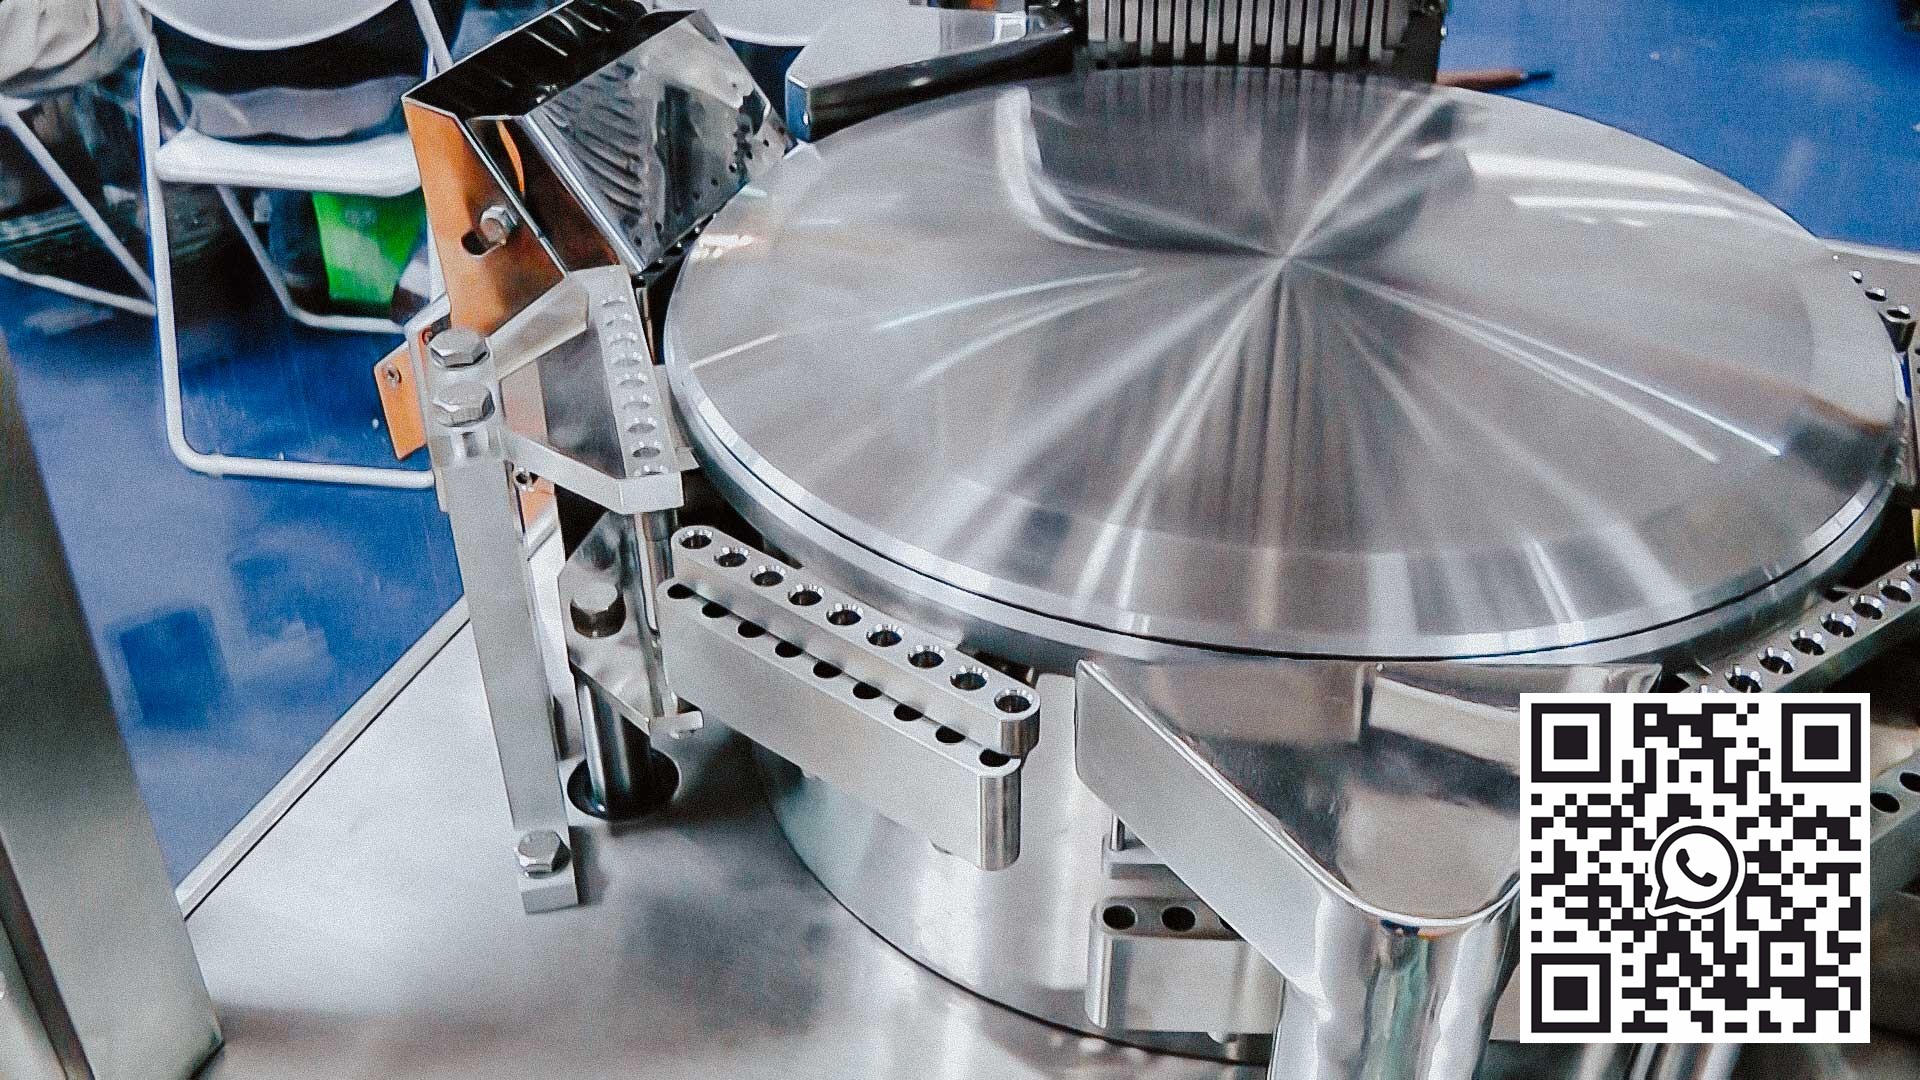 Automatisk utstyr for å fylle harde gelatinkapsler med pulver for legemiddelproduksjon